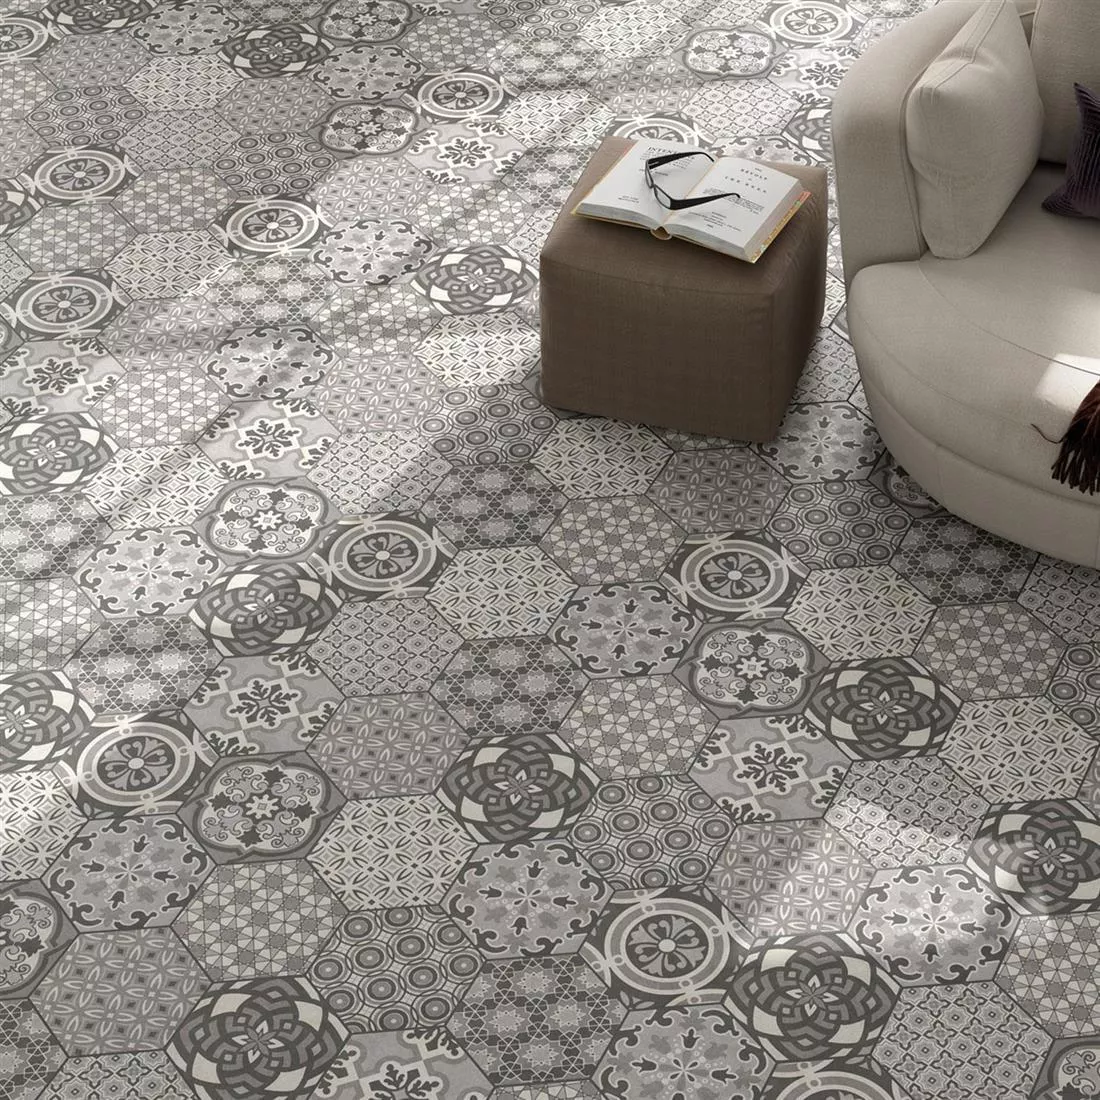 Sample Cement Tiles Optic Hexagon Floor Tiles Alicante Decor Magic